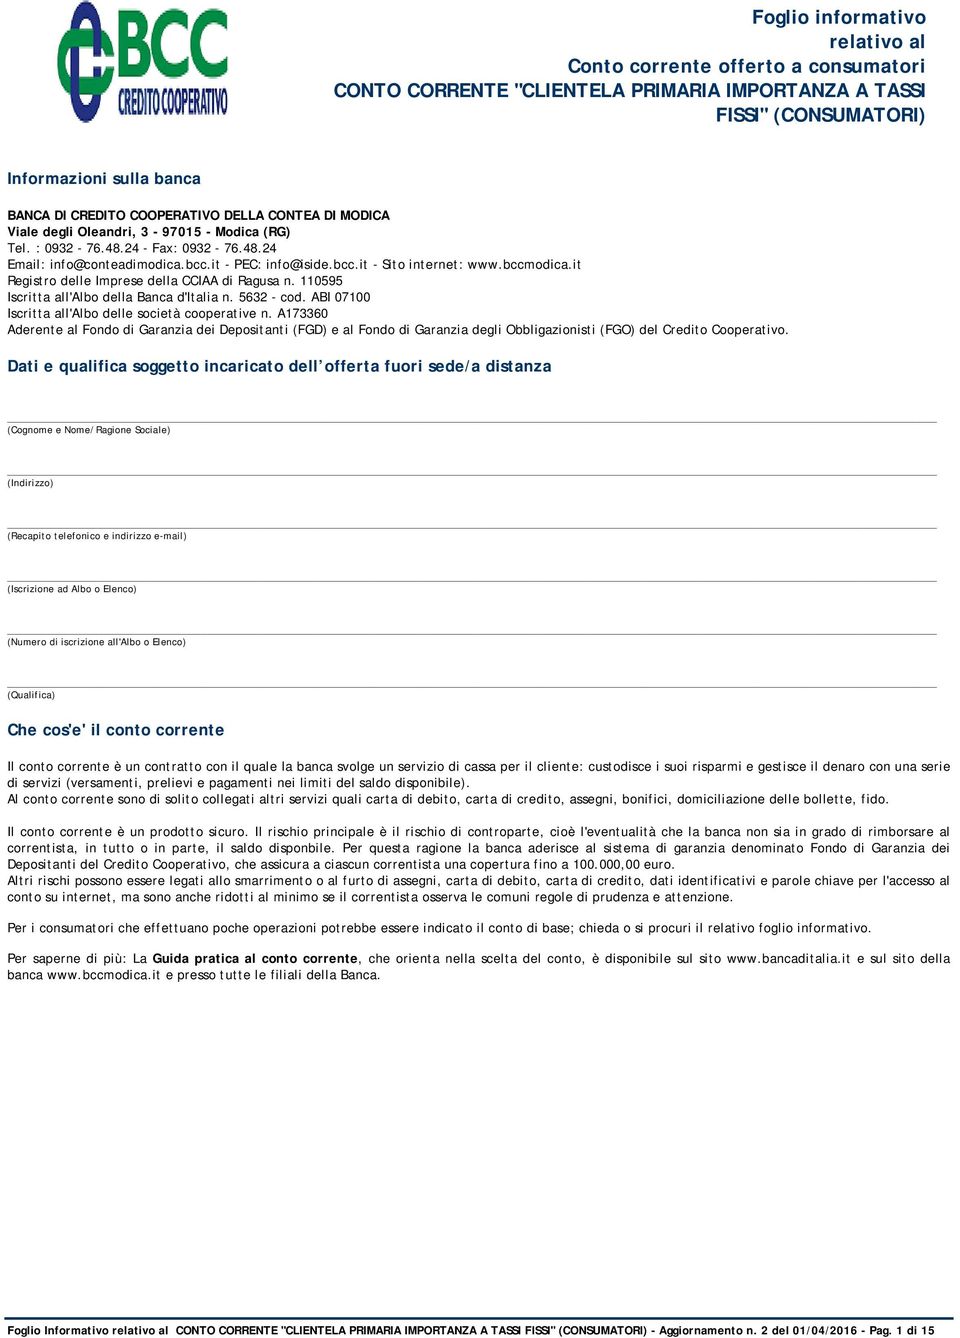 it Registro delle Imprese della CCIAA di Ragusa n. 110595 Iscritta all'albo della Banca d'italia n. 5632 - cod. ABI 07100 Iscritta all'albo delle società cooperative n.